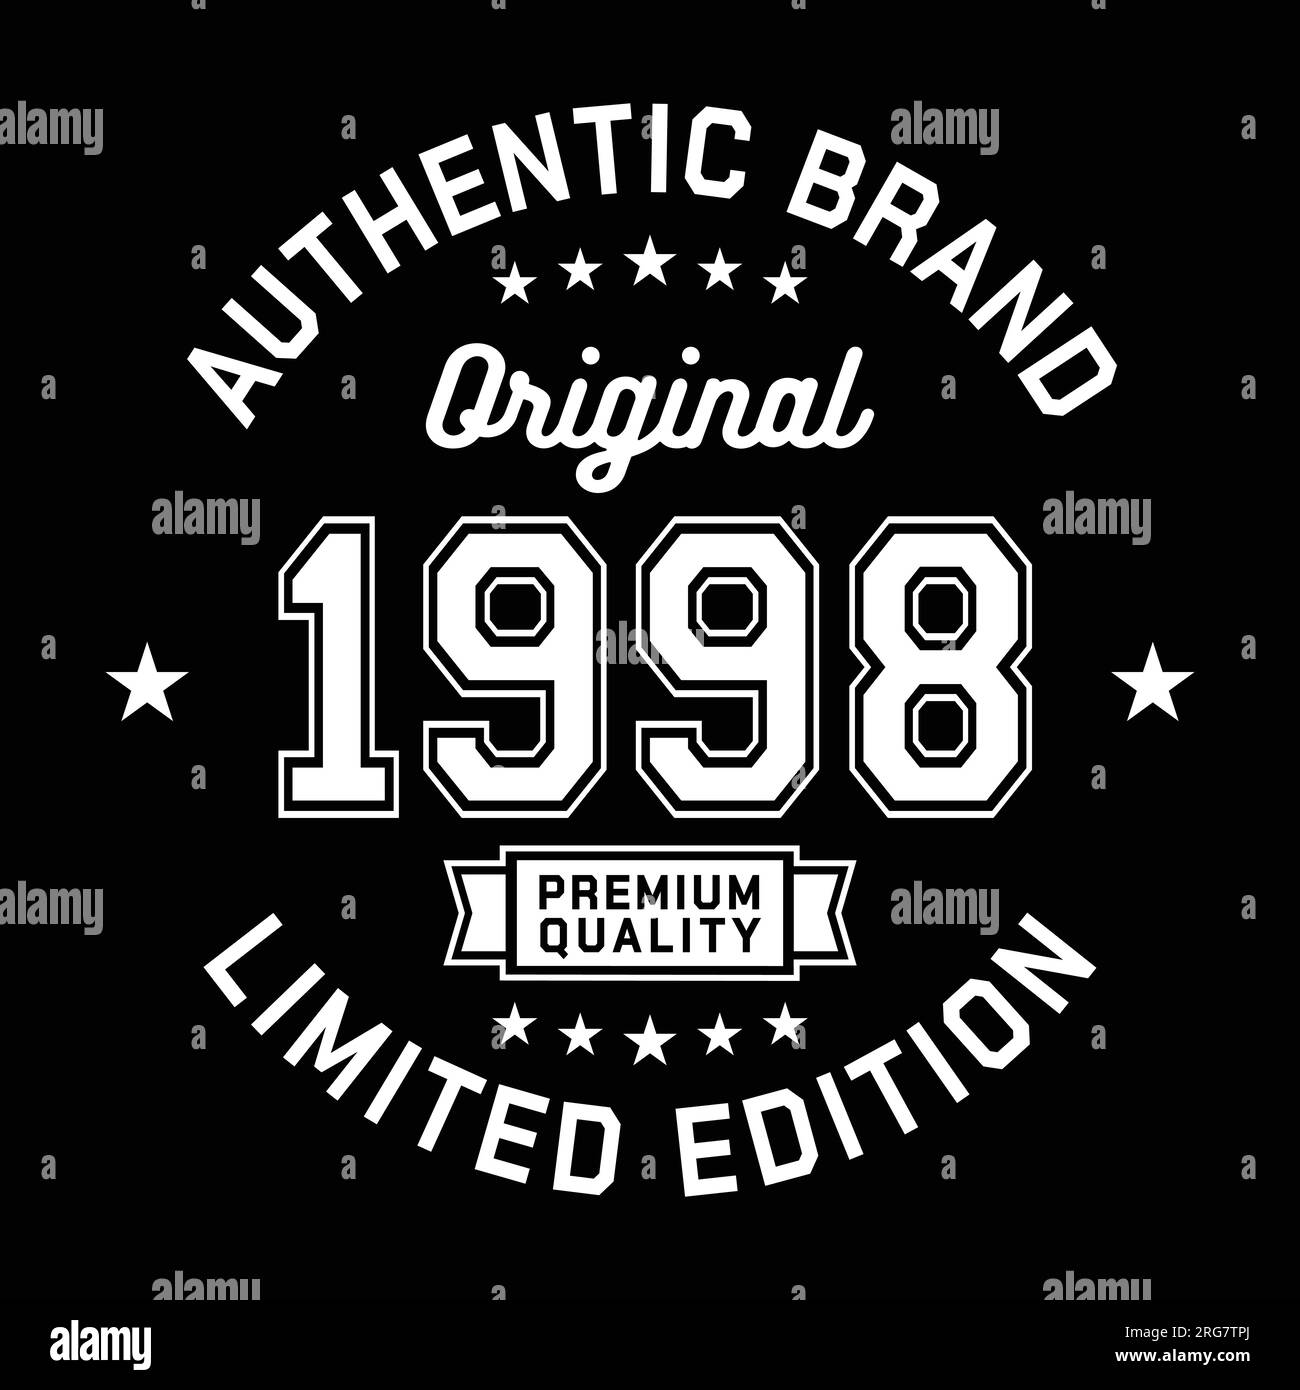 1998 authentische Marke. Modisches Bekleidungsdesign. Grafikdesign für T-Shirt. Vektor und Illustration. Stock Vektor